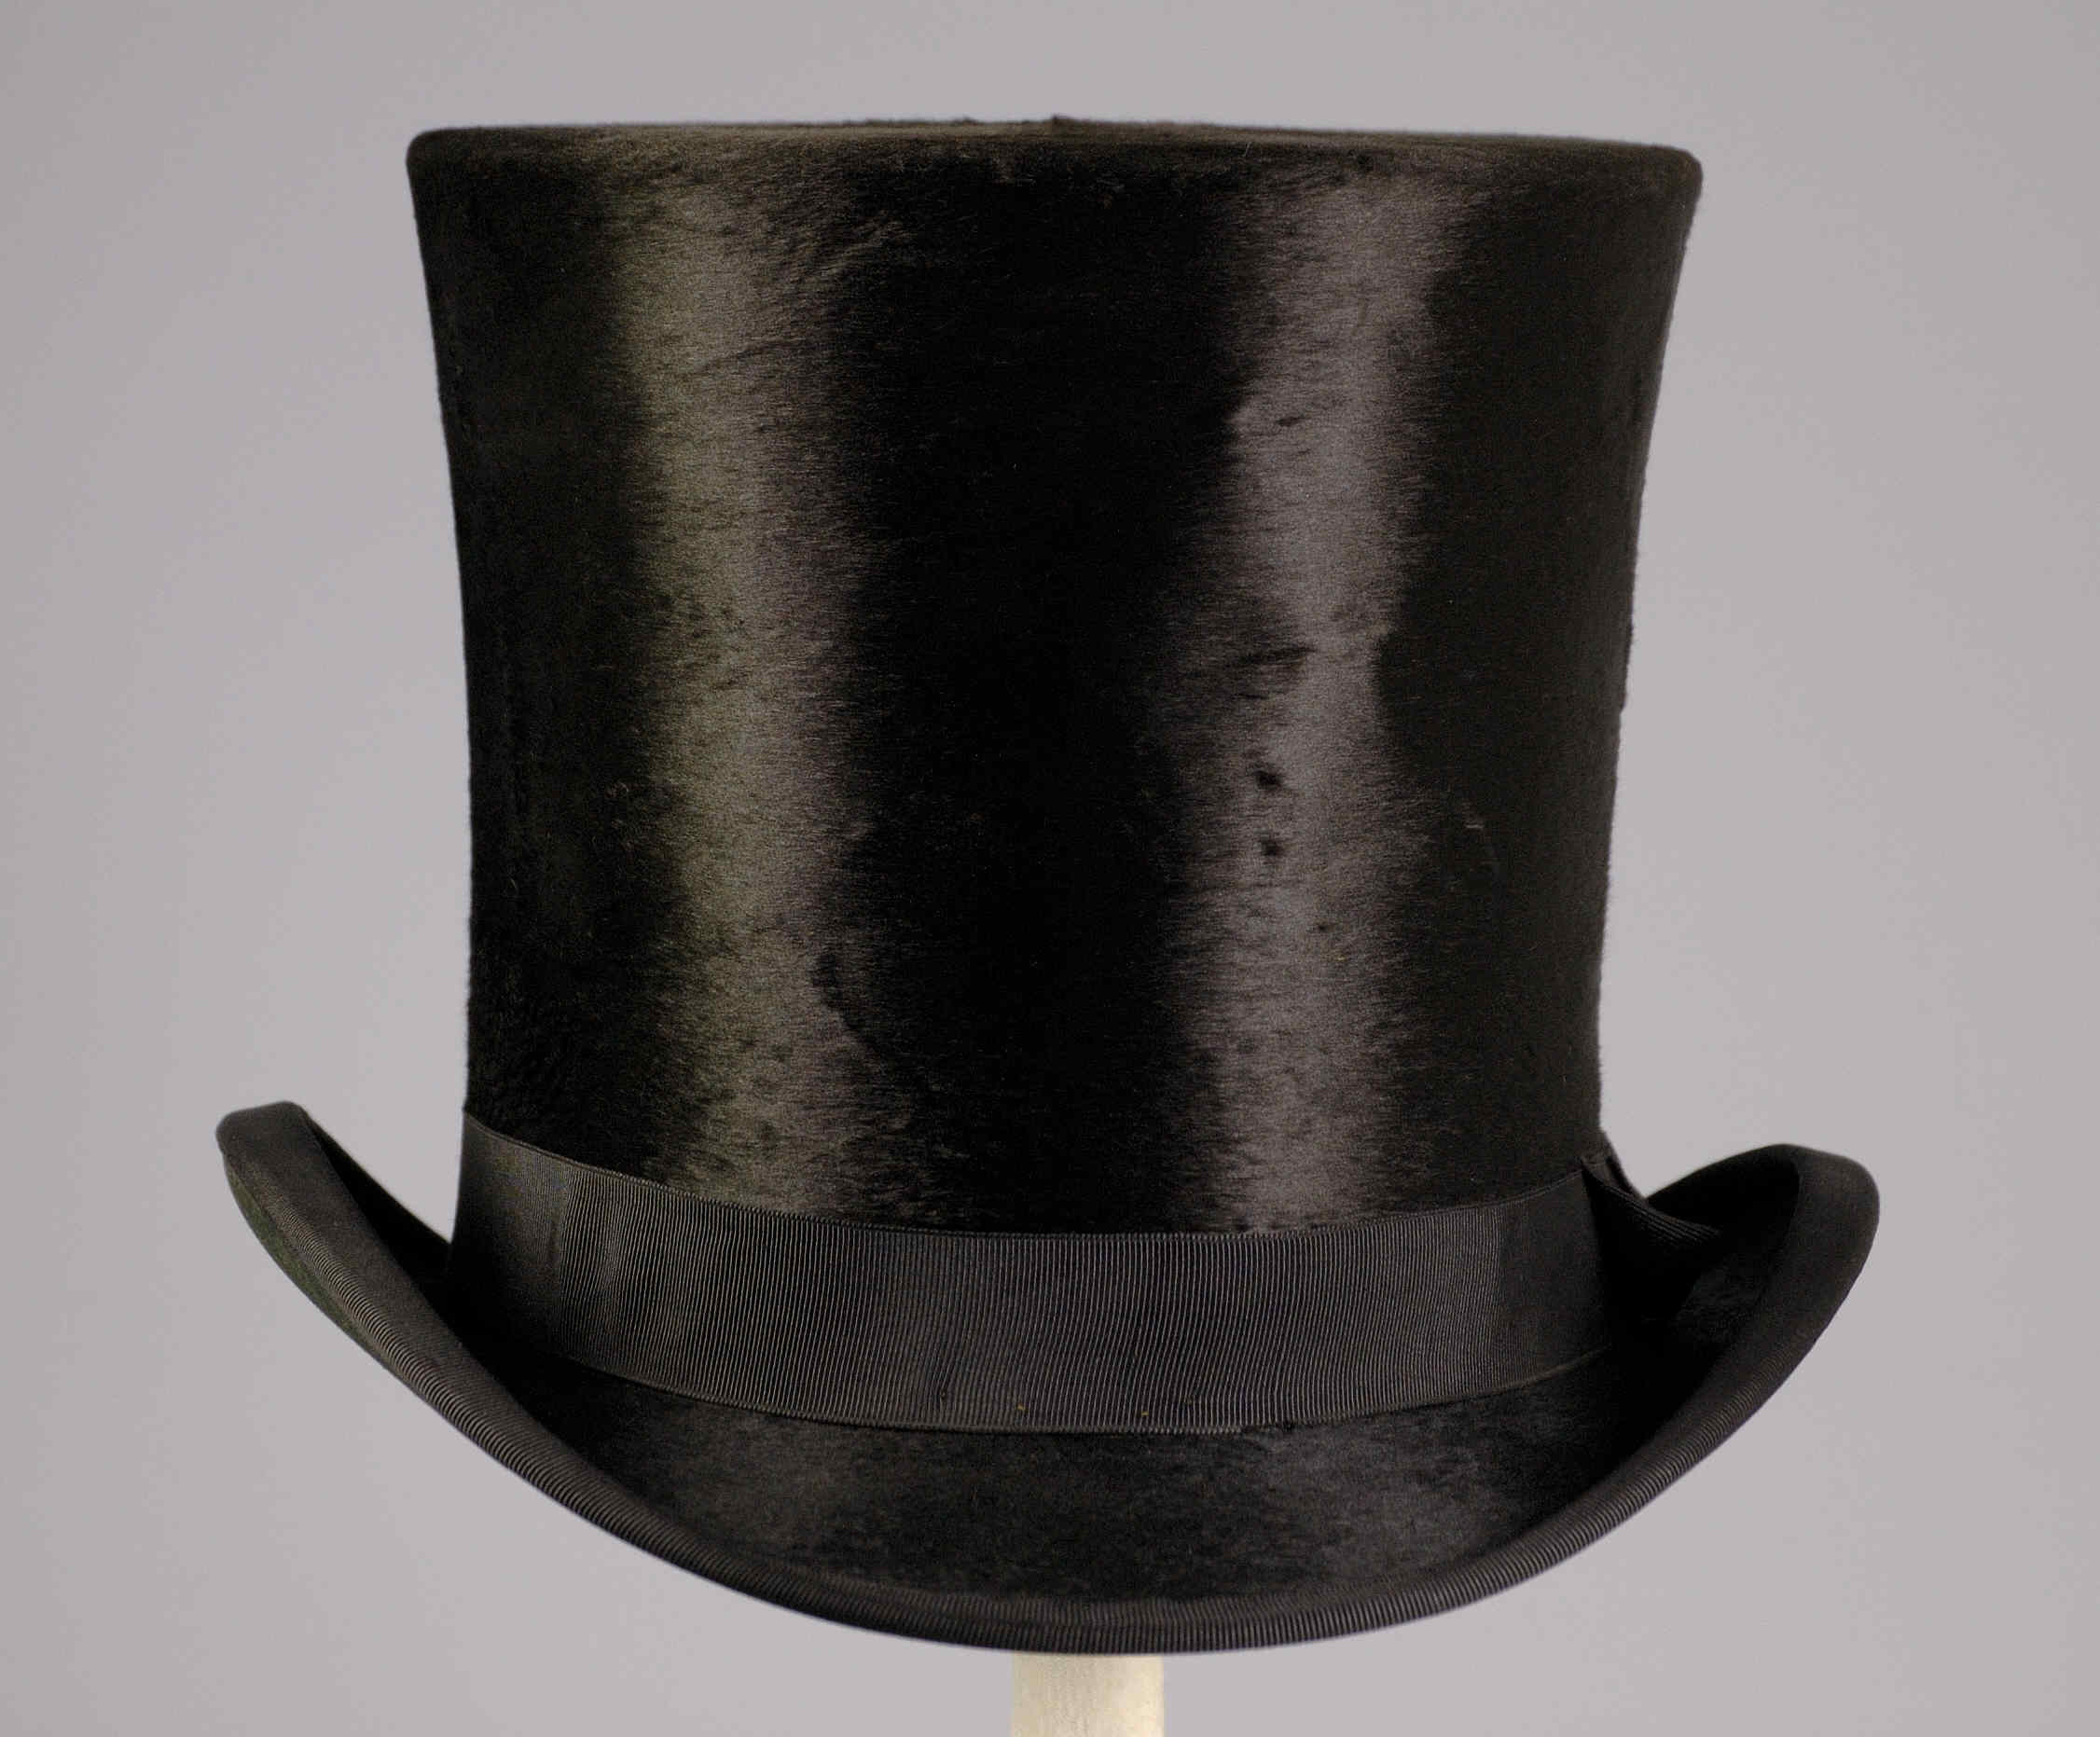 Цилиндр одежда. Котелок шляпа 19 век. Головной убор Боливар 19 век. Шляпа мужчины 19 век men's hat 19th Century. Боливар шляпа 19 век.